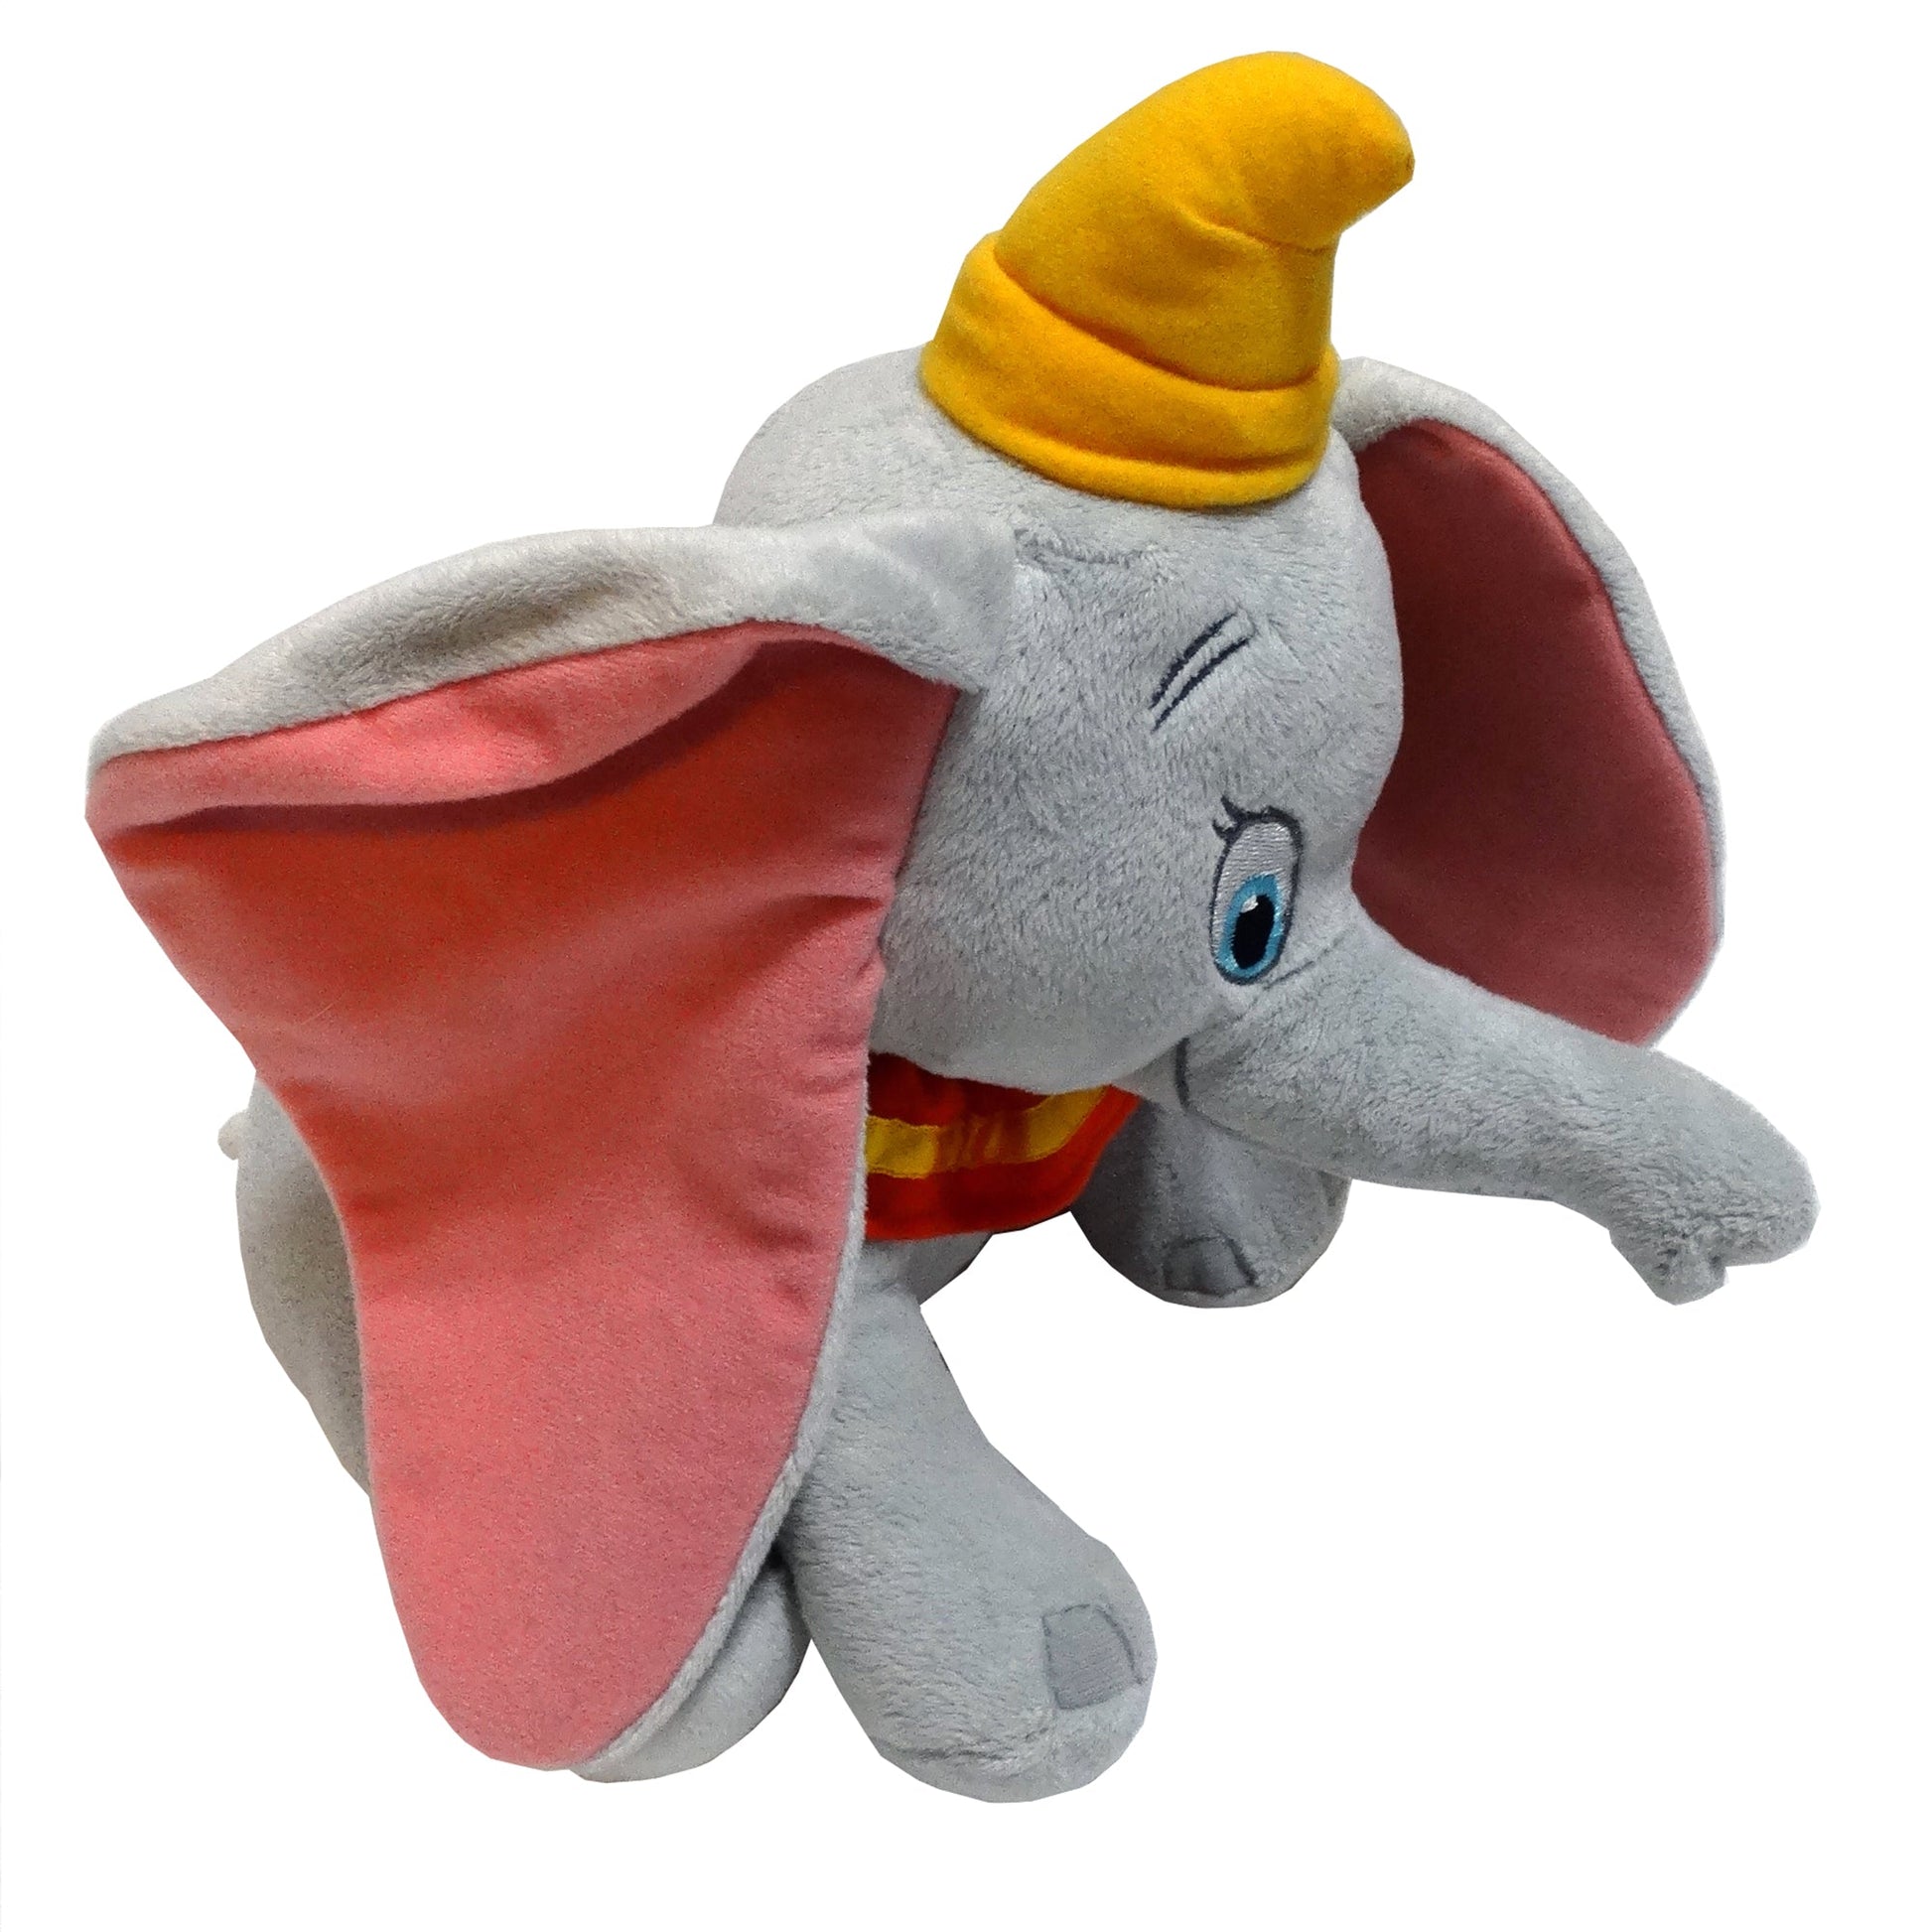 Disney-Dumbo-Flying-Elephant-Stuffed-Animal_-Side-View